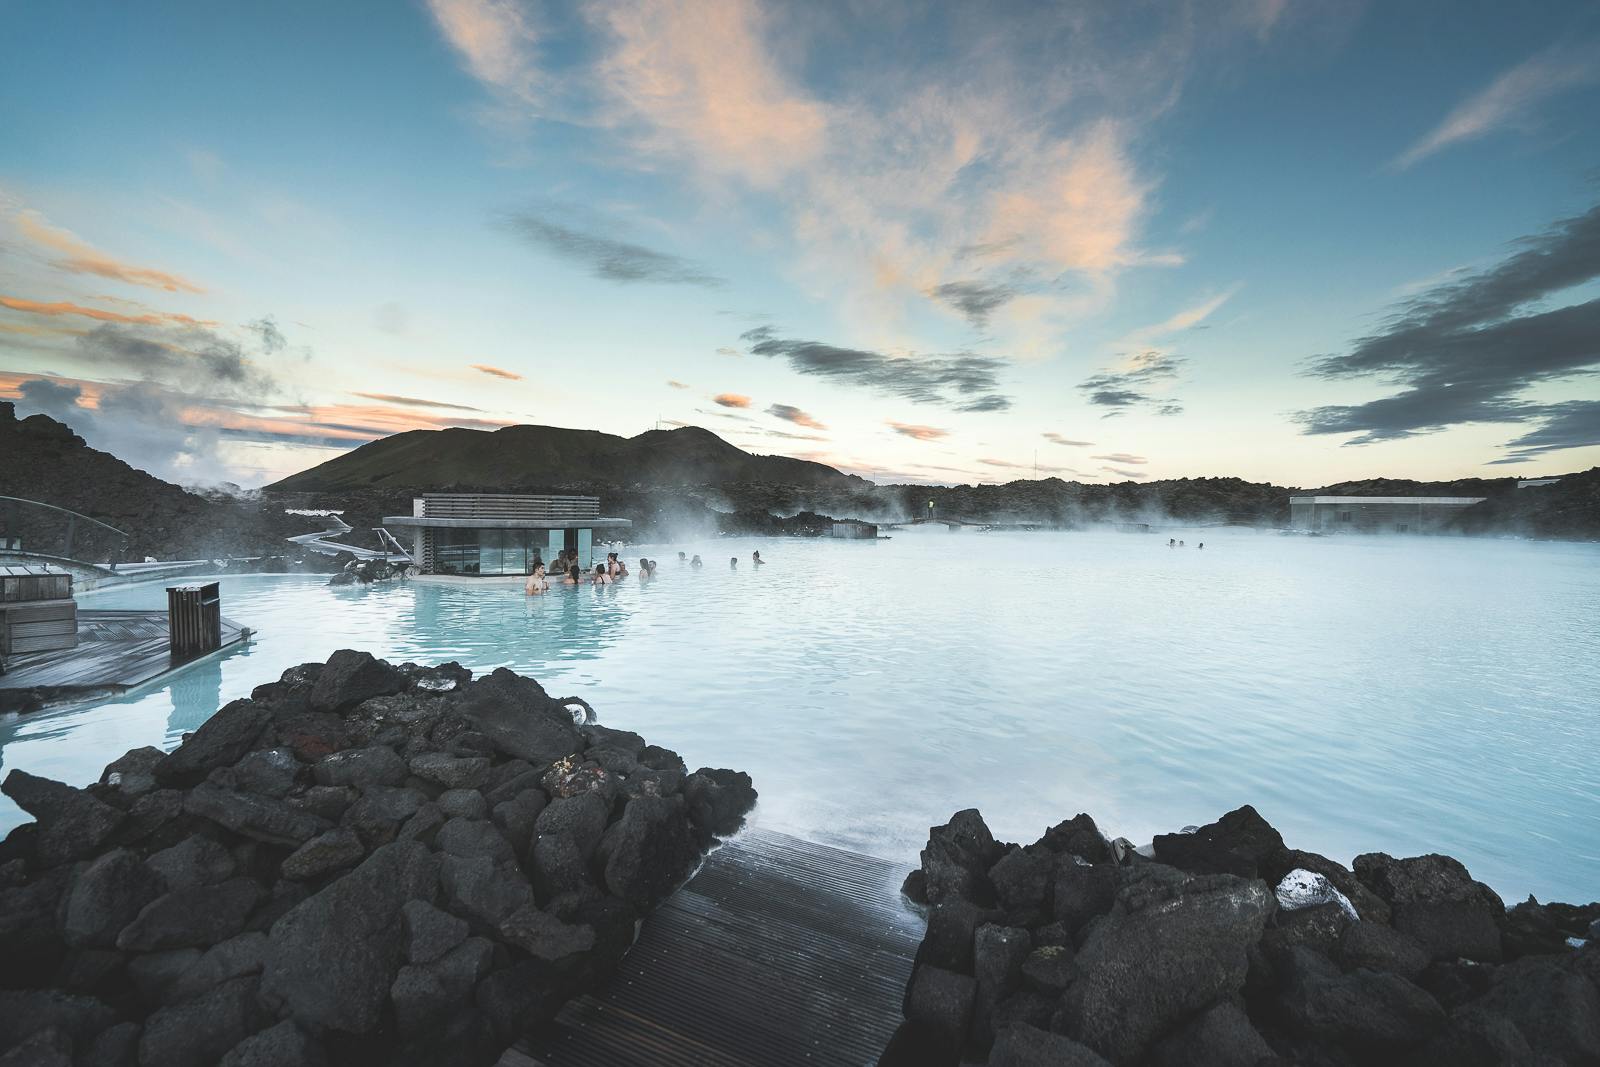 De Blue Lagoon is een mystieke geothermale spa omringd door lava